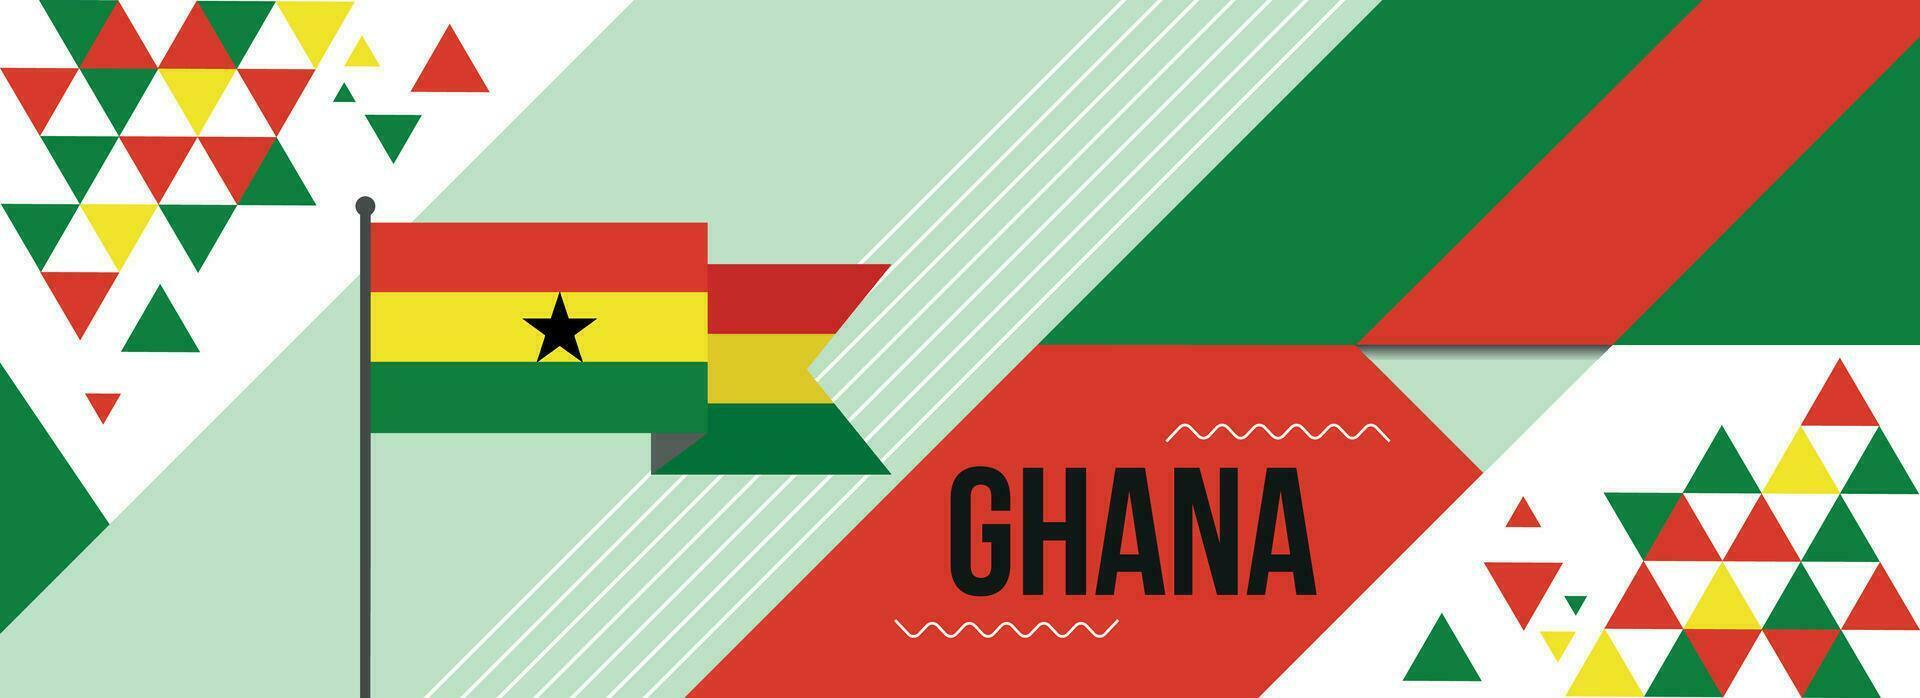 Ghana nacional o independencia día bandera diseño para país celebracion. bandera de Ghana con moderno retro diseño y resumen geométrico iconos vector ilustración.